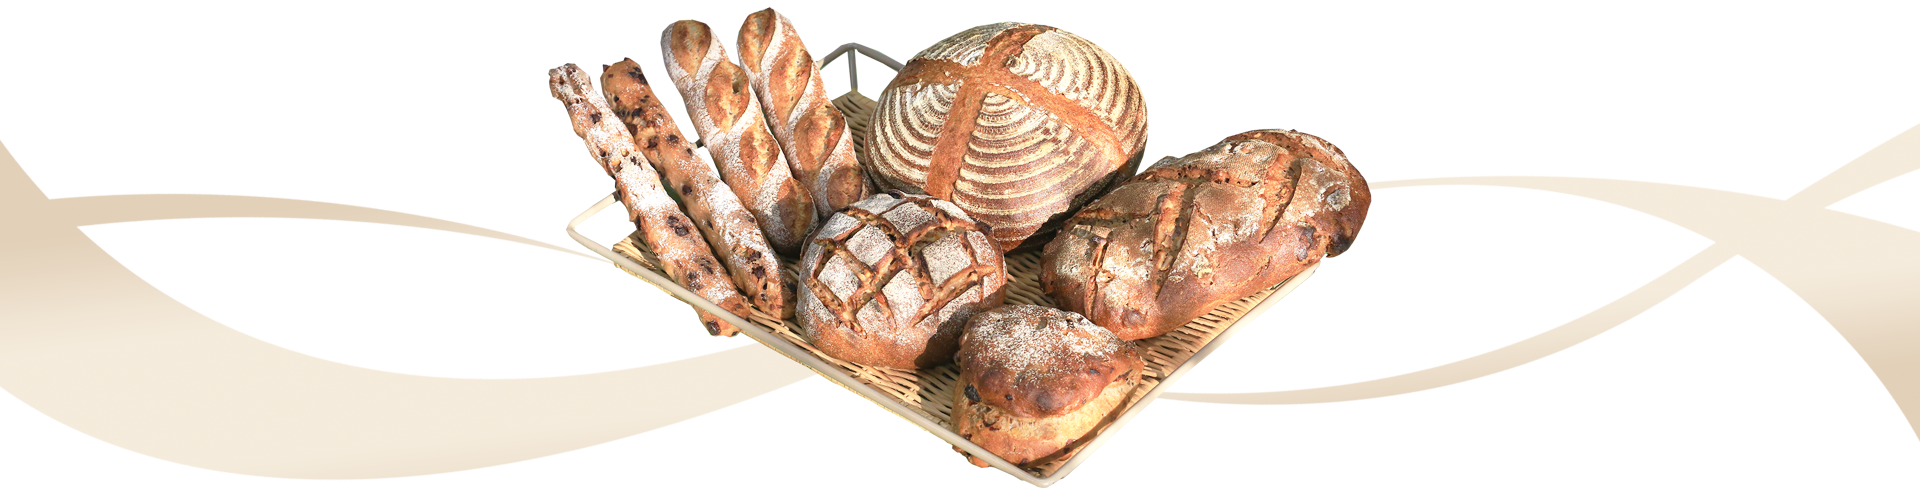 日々のパン焼き 新しいパン文化の発信　食パンとカンパーニュの美味しいお店